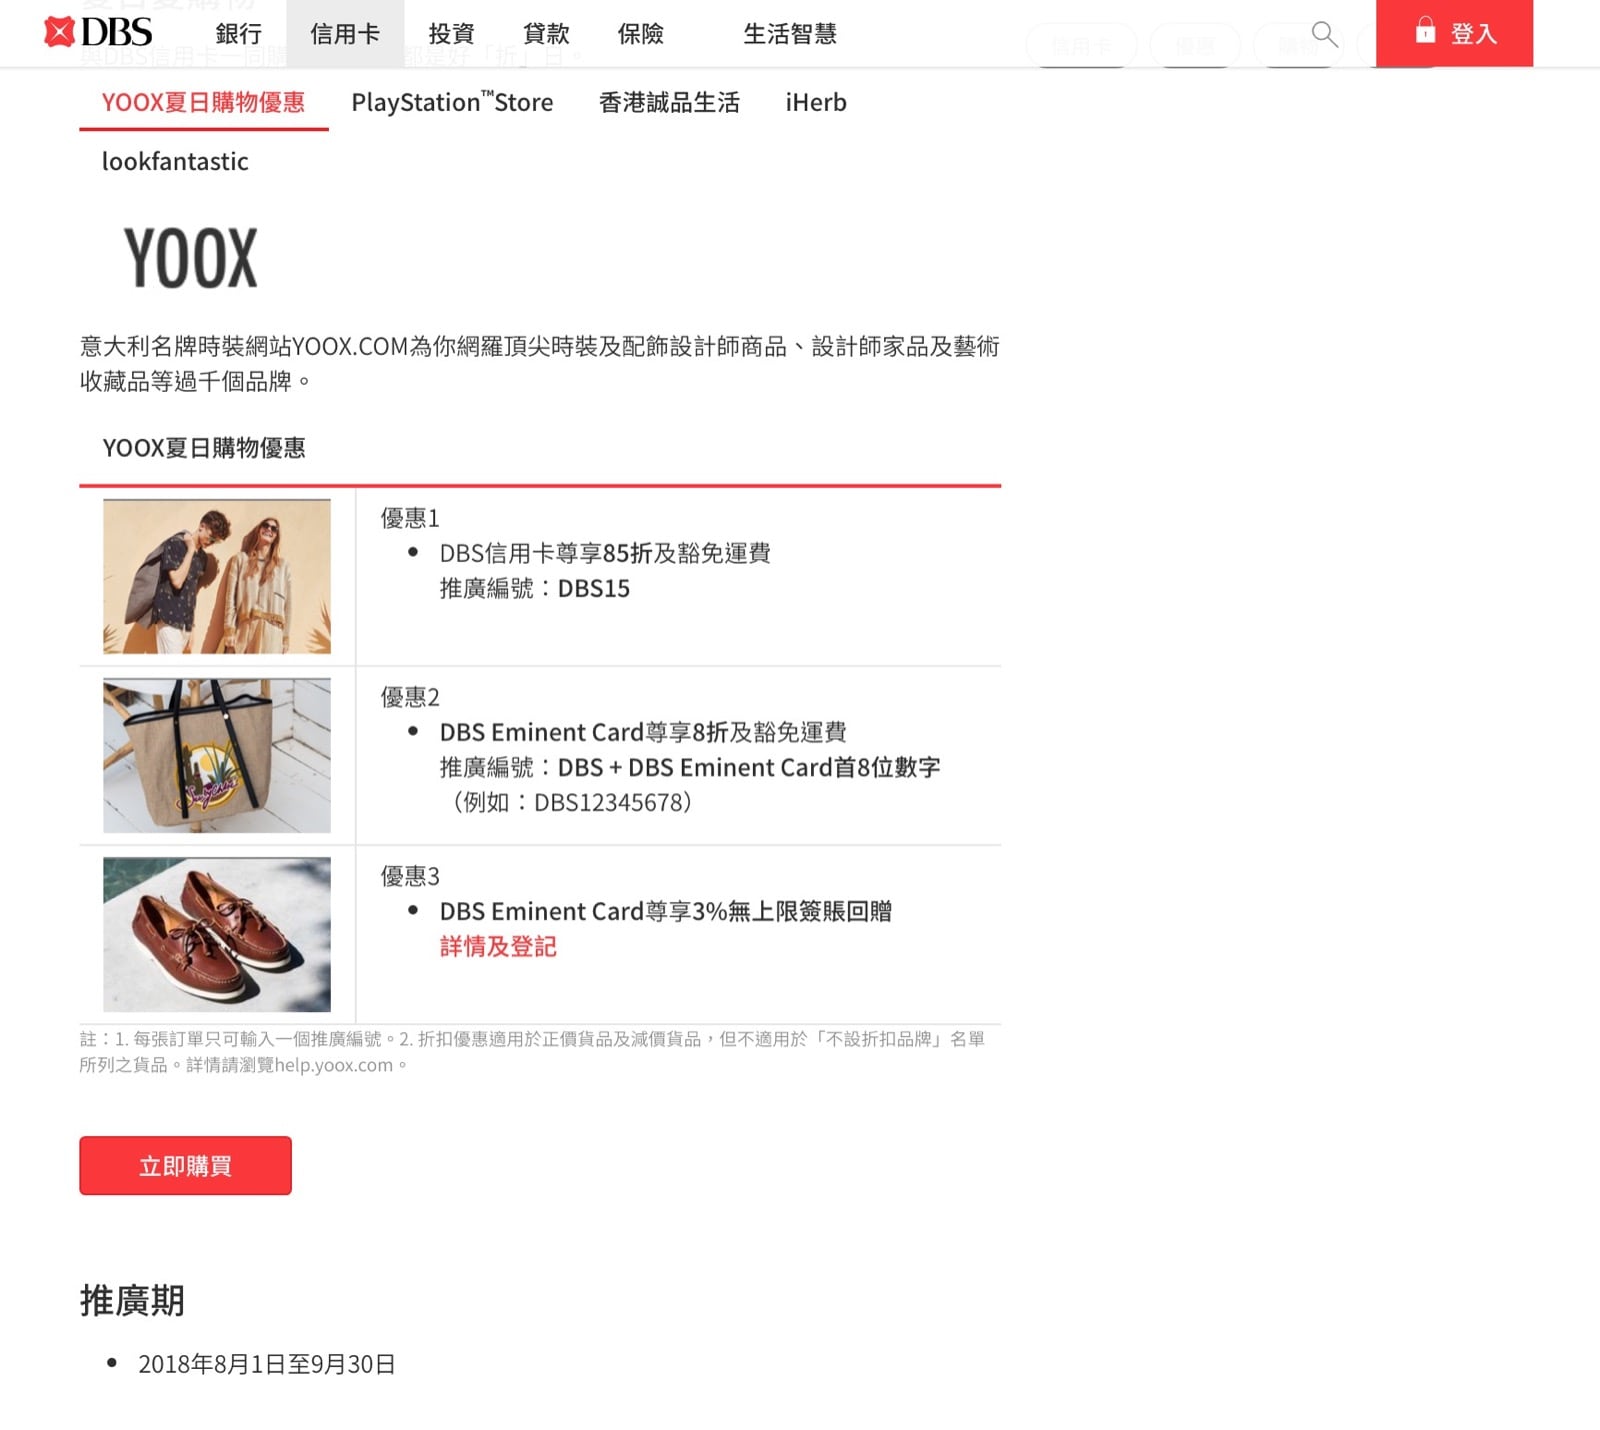 精選慳家人優惠推介：[折上折] YOOX.com X DBS信用卡：額外即時8折優惠碼yooxcode＋免運費＞即刻去睇睇優惠詳情啦！